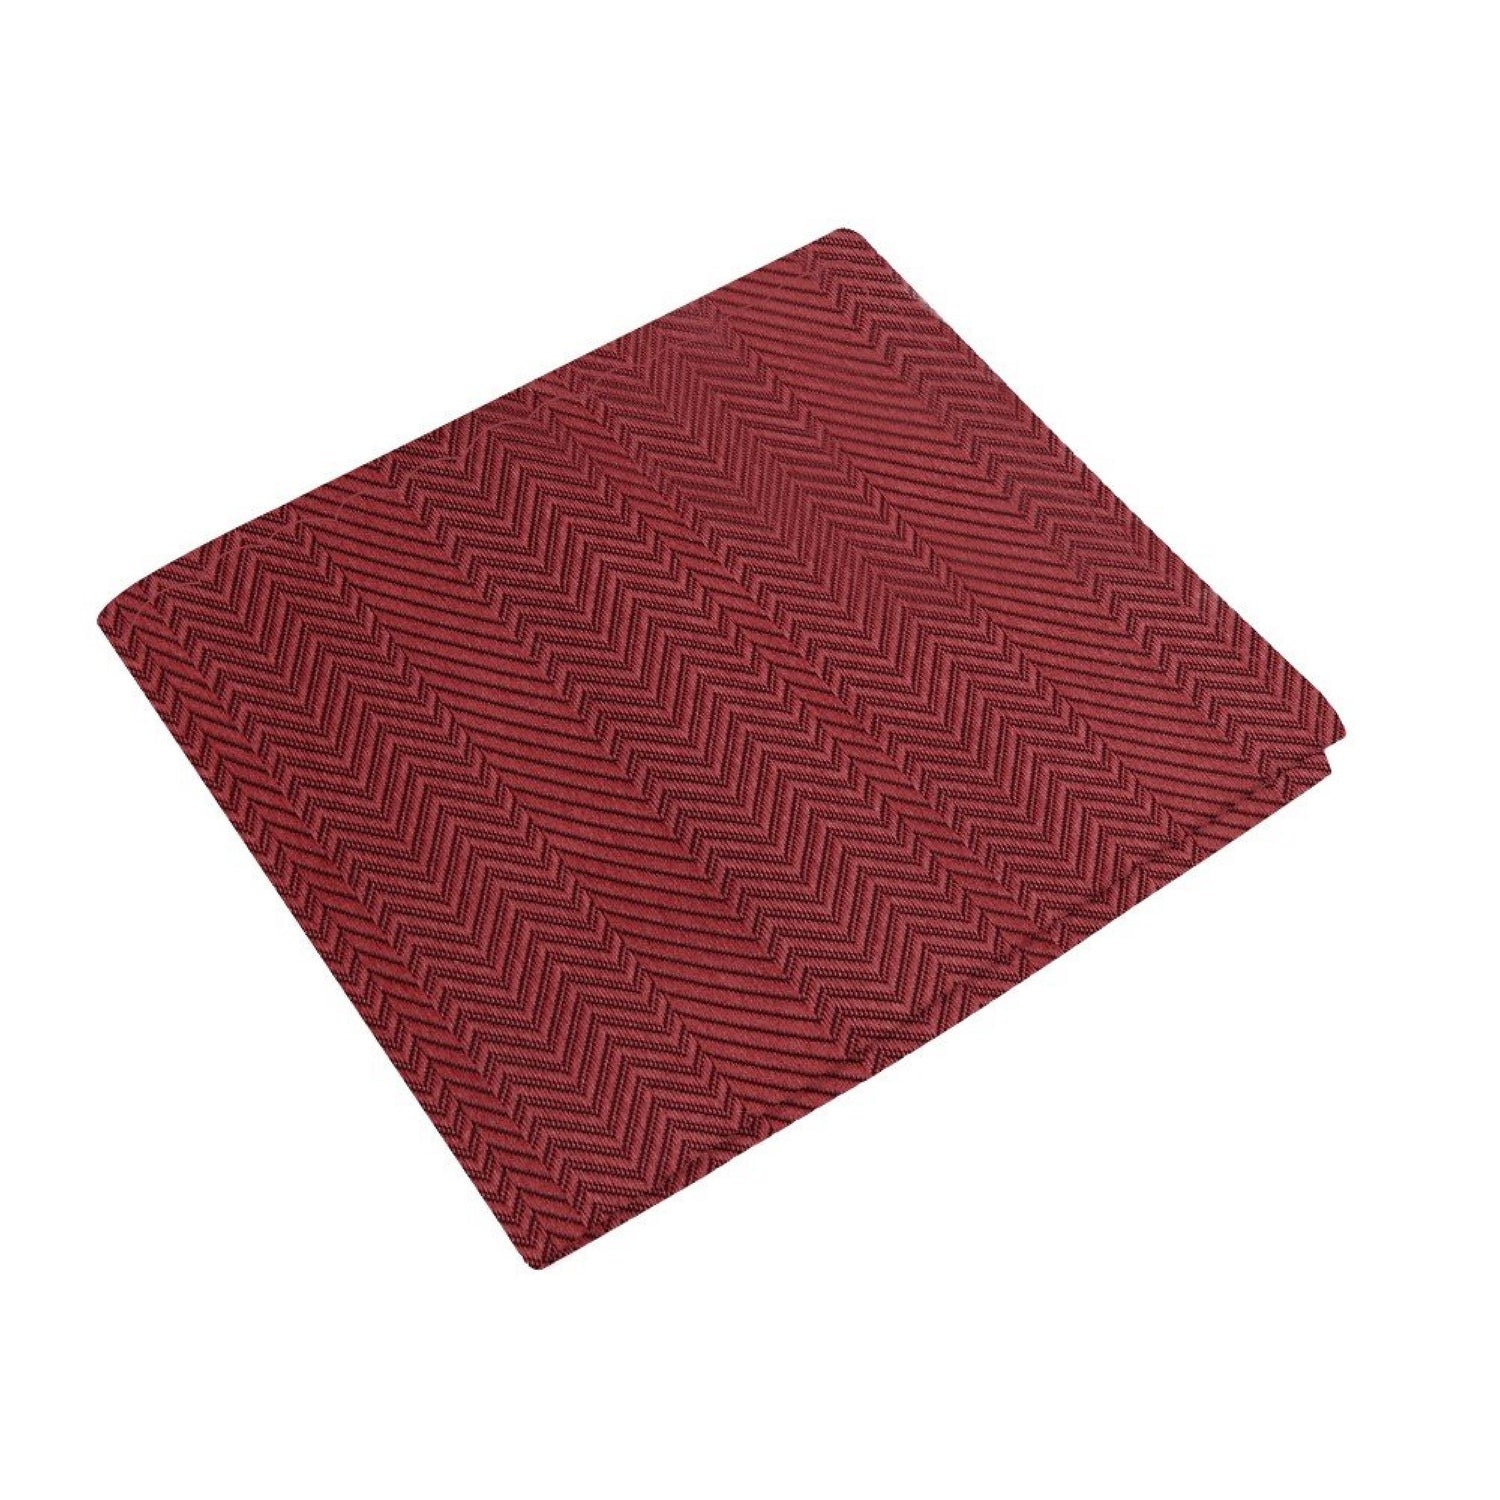 Solid Garnet Red Pocket Square